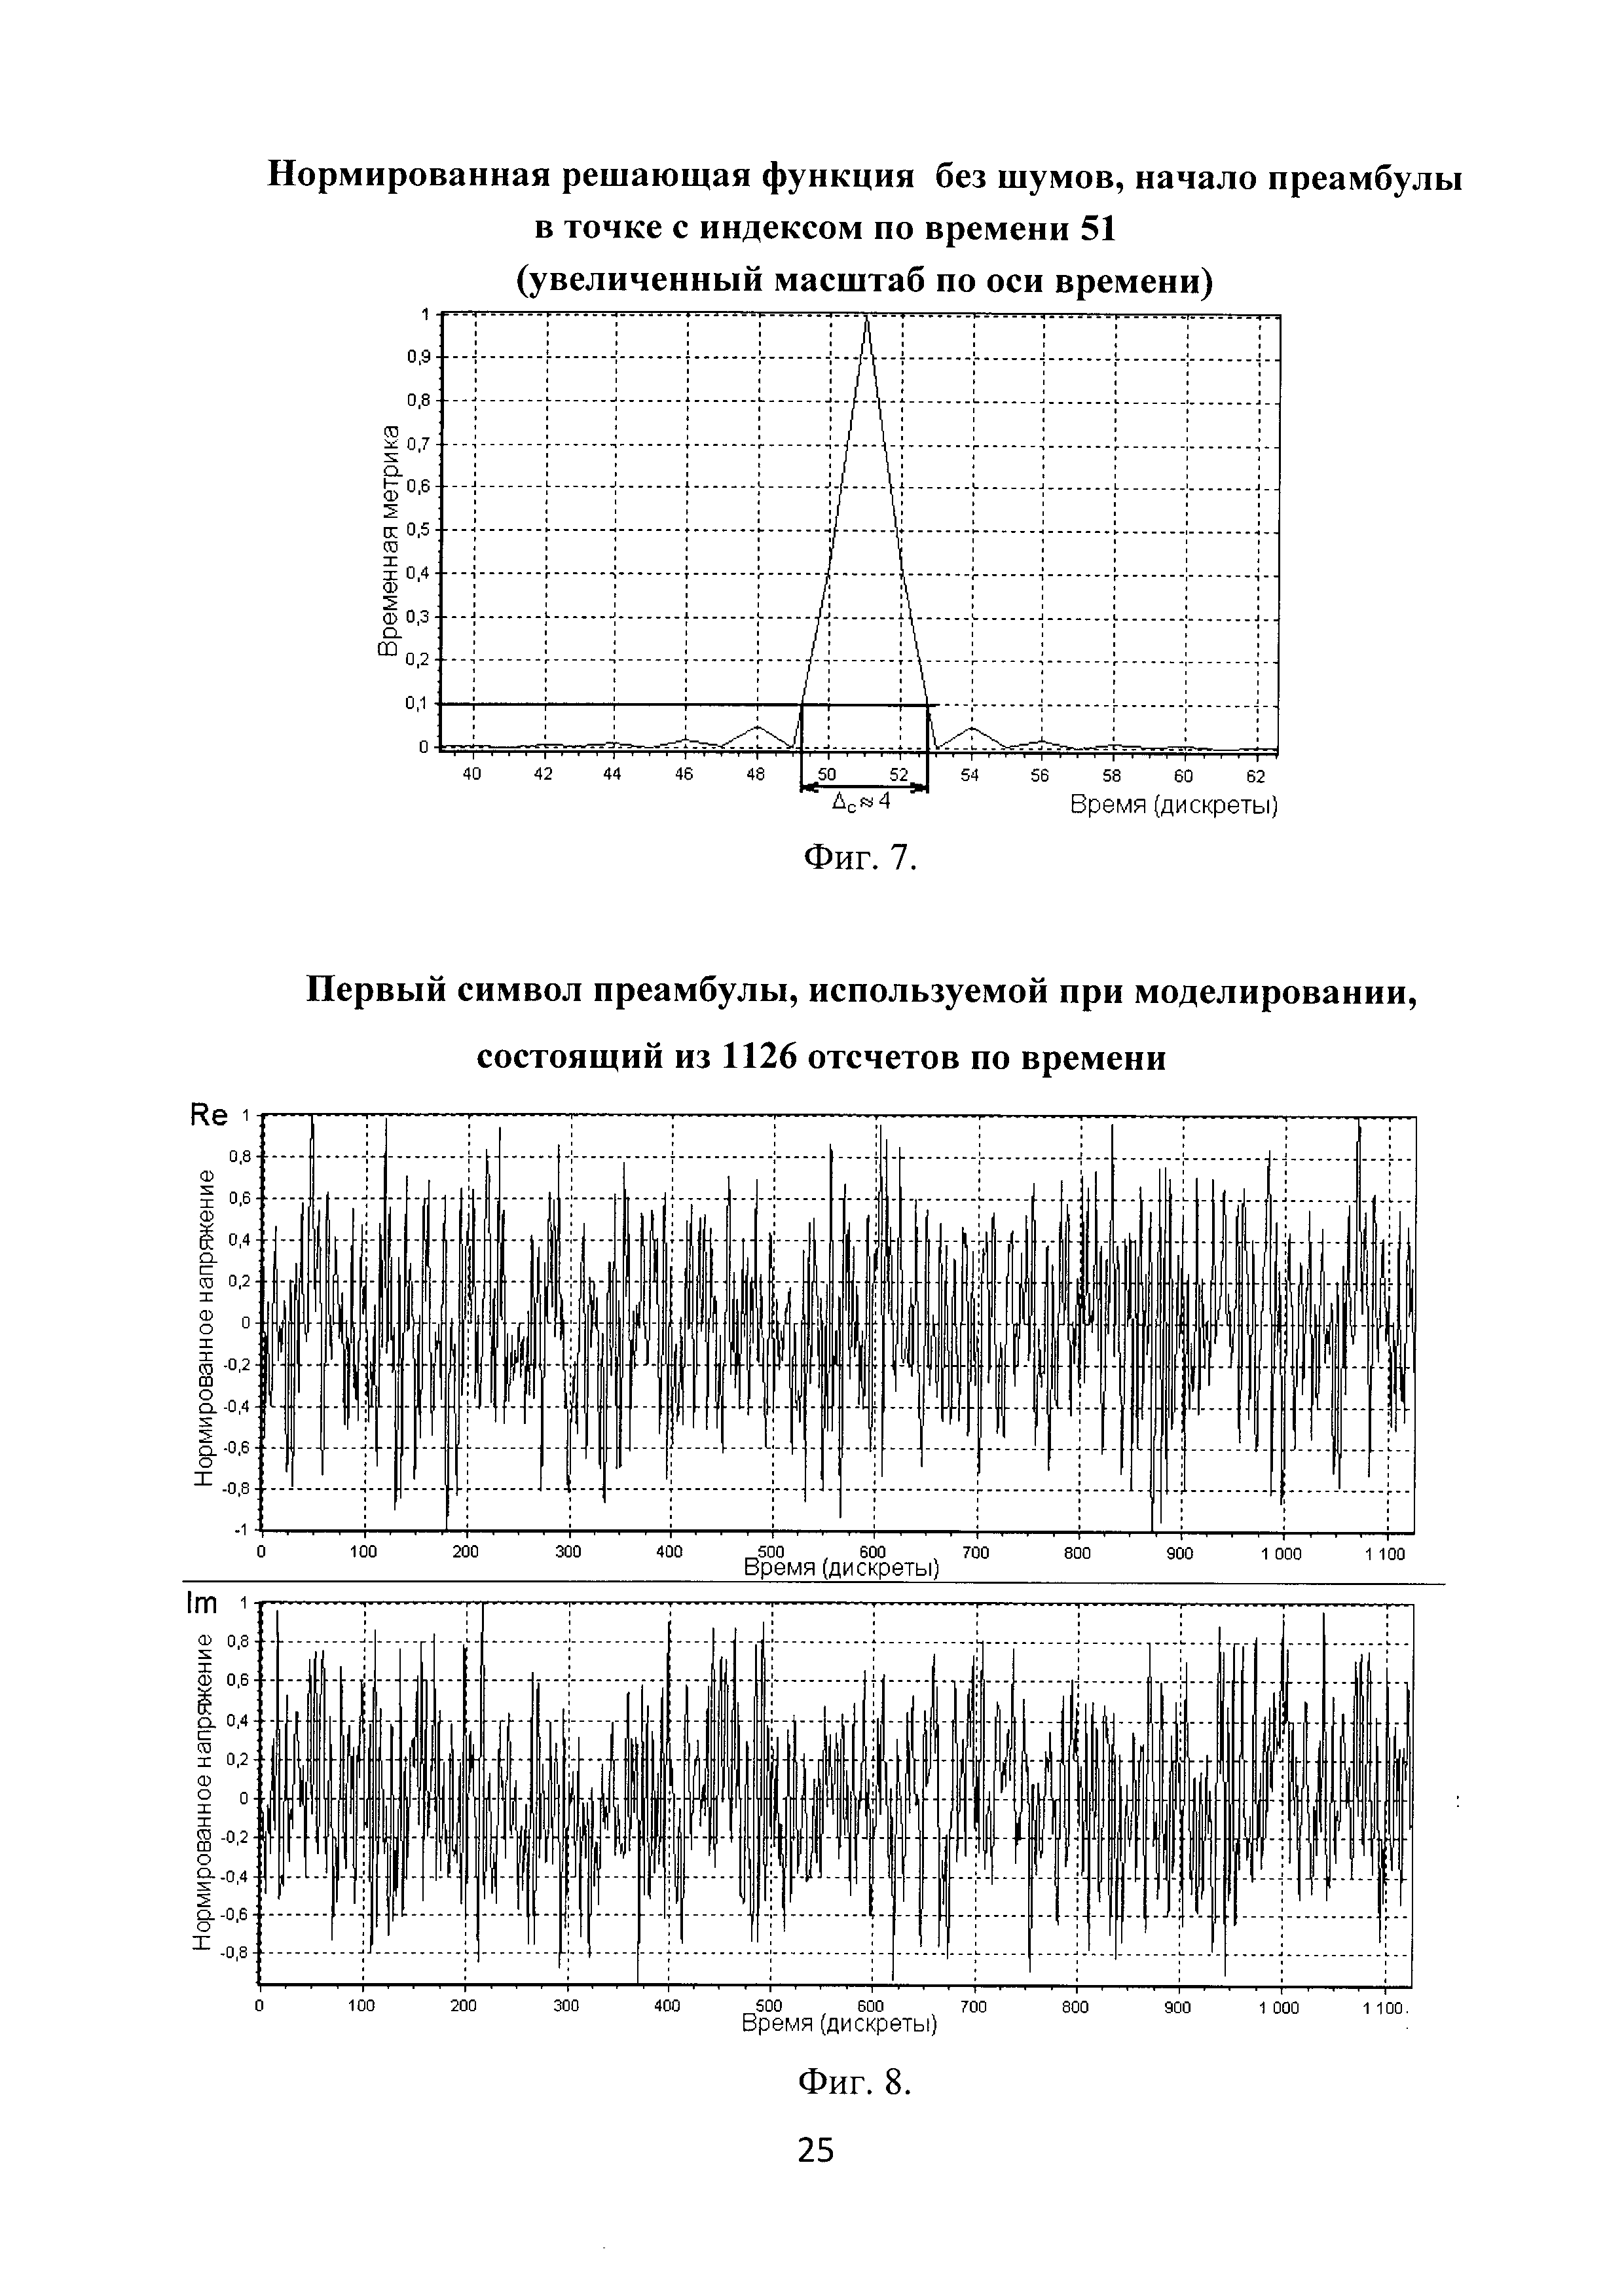 Способ временной синхронизации системы связи на основе ортогонального частотного разделения каналов с мультиплексированием по преамбуле